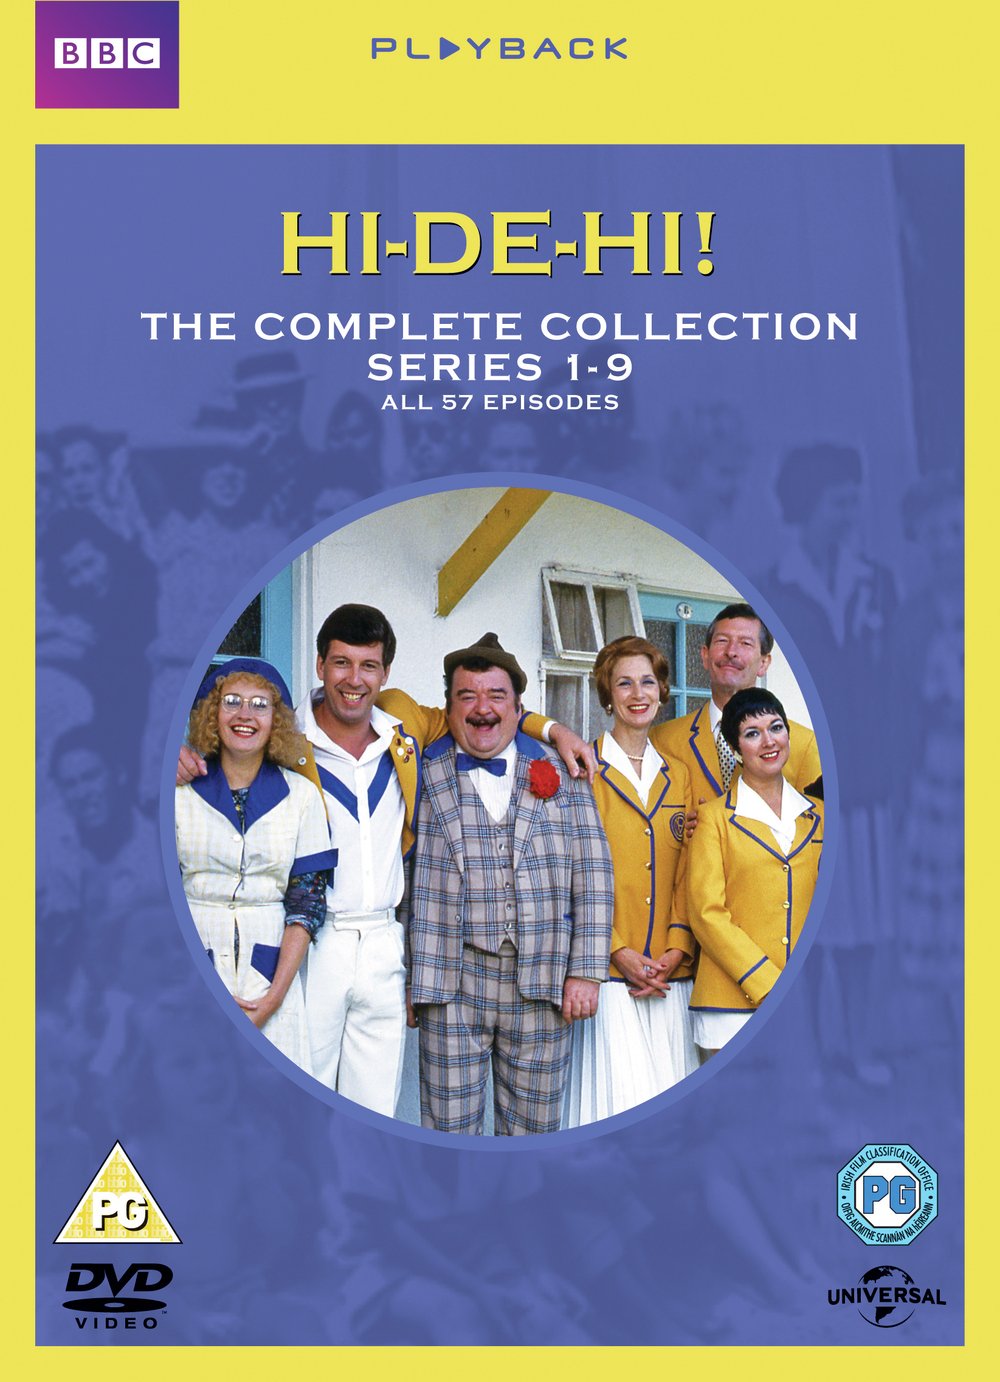 Hi-de-Hi! The Complete Series DVD Box Set Review